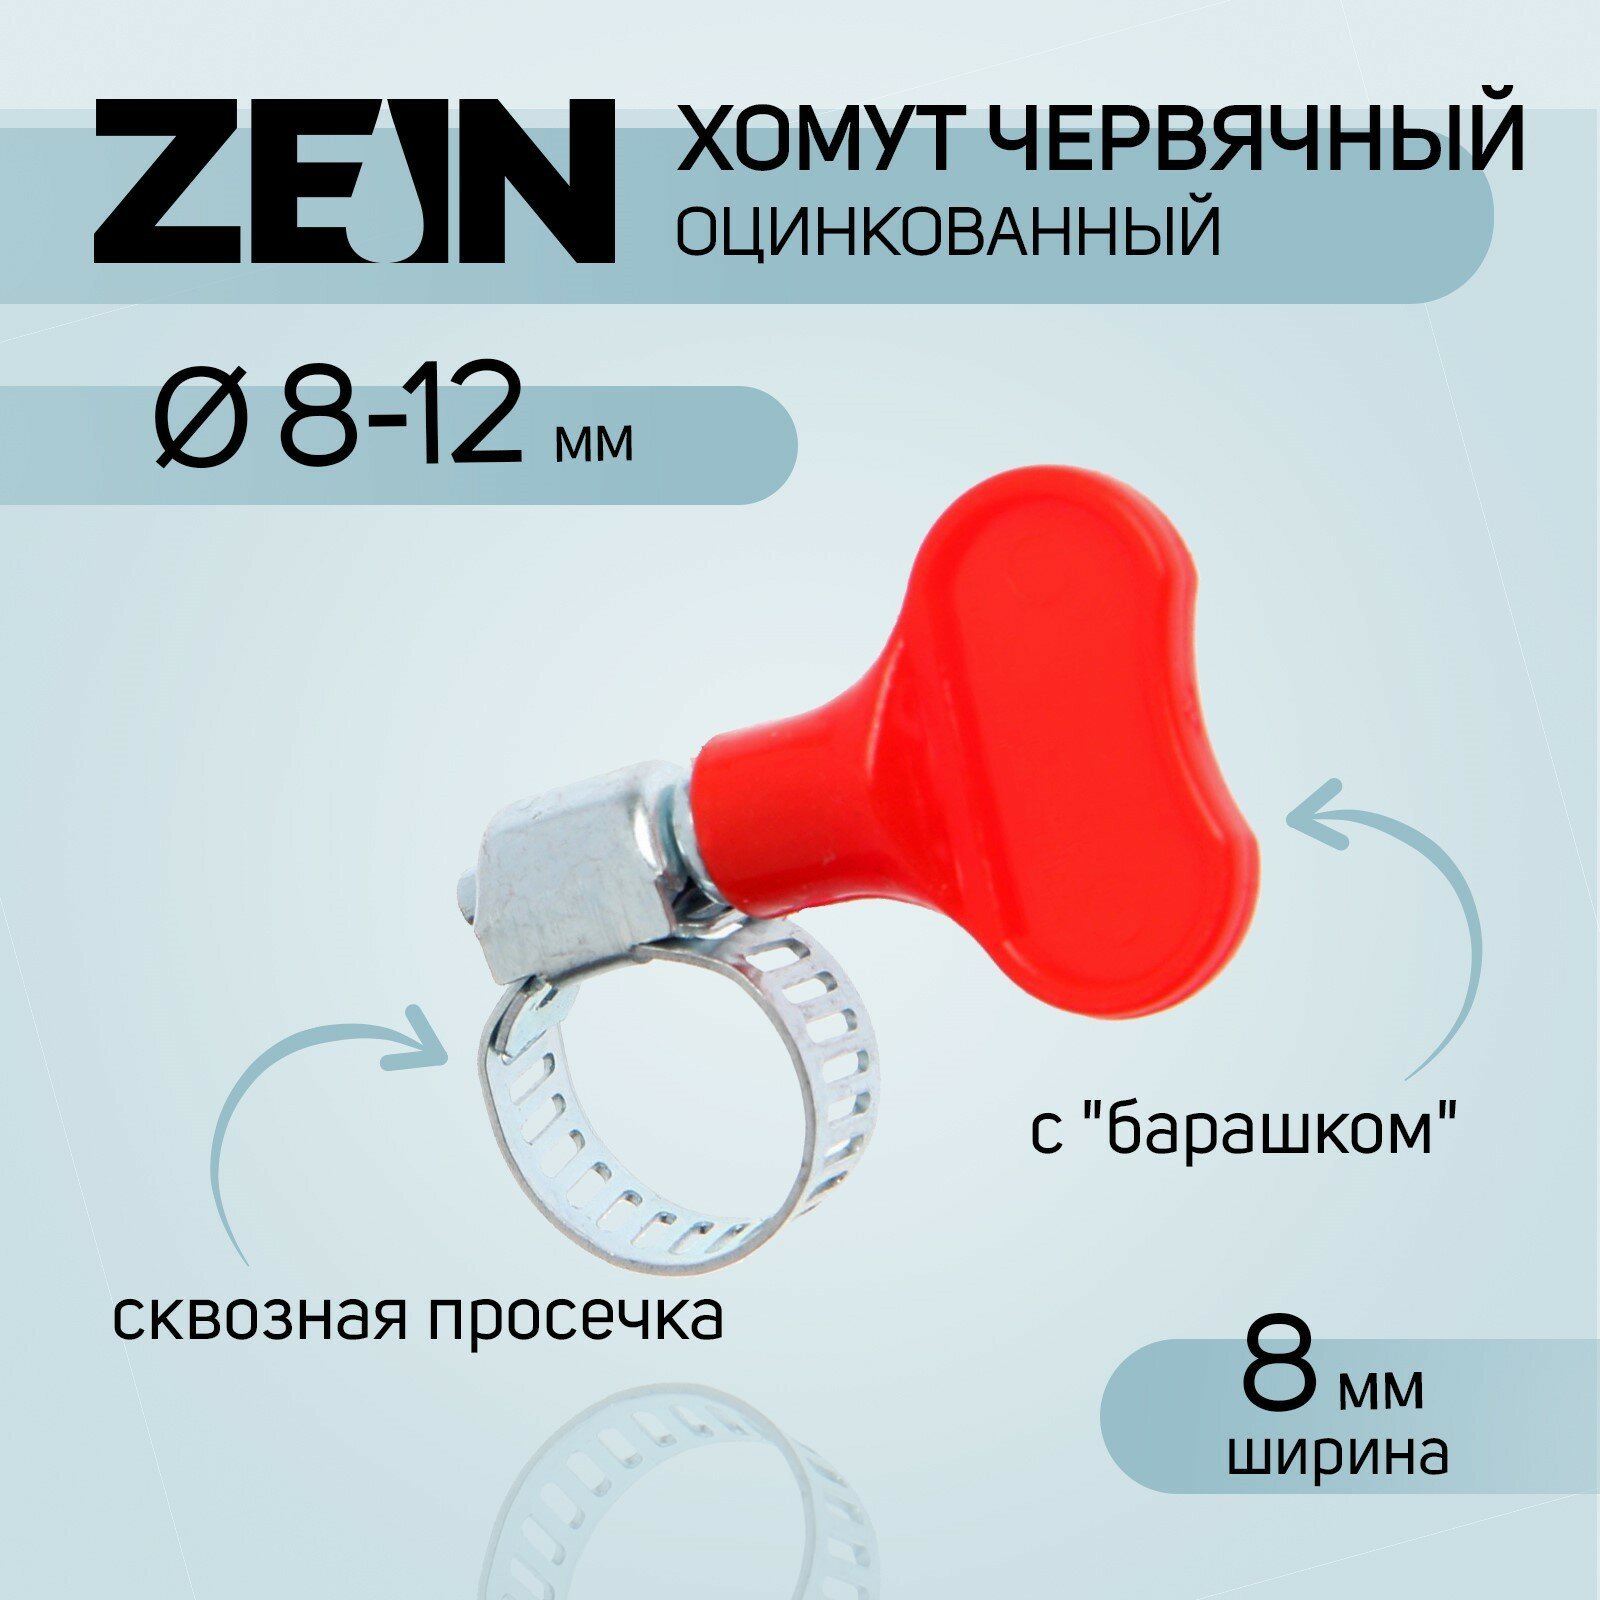 Хомут червячный с "барашком" ZEIN, сквозная просечка, диаметр 8-12 мм, оцинкованный (10шт.)